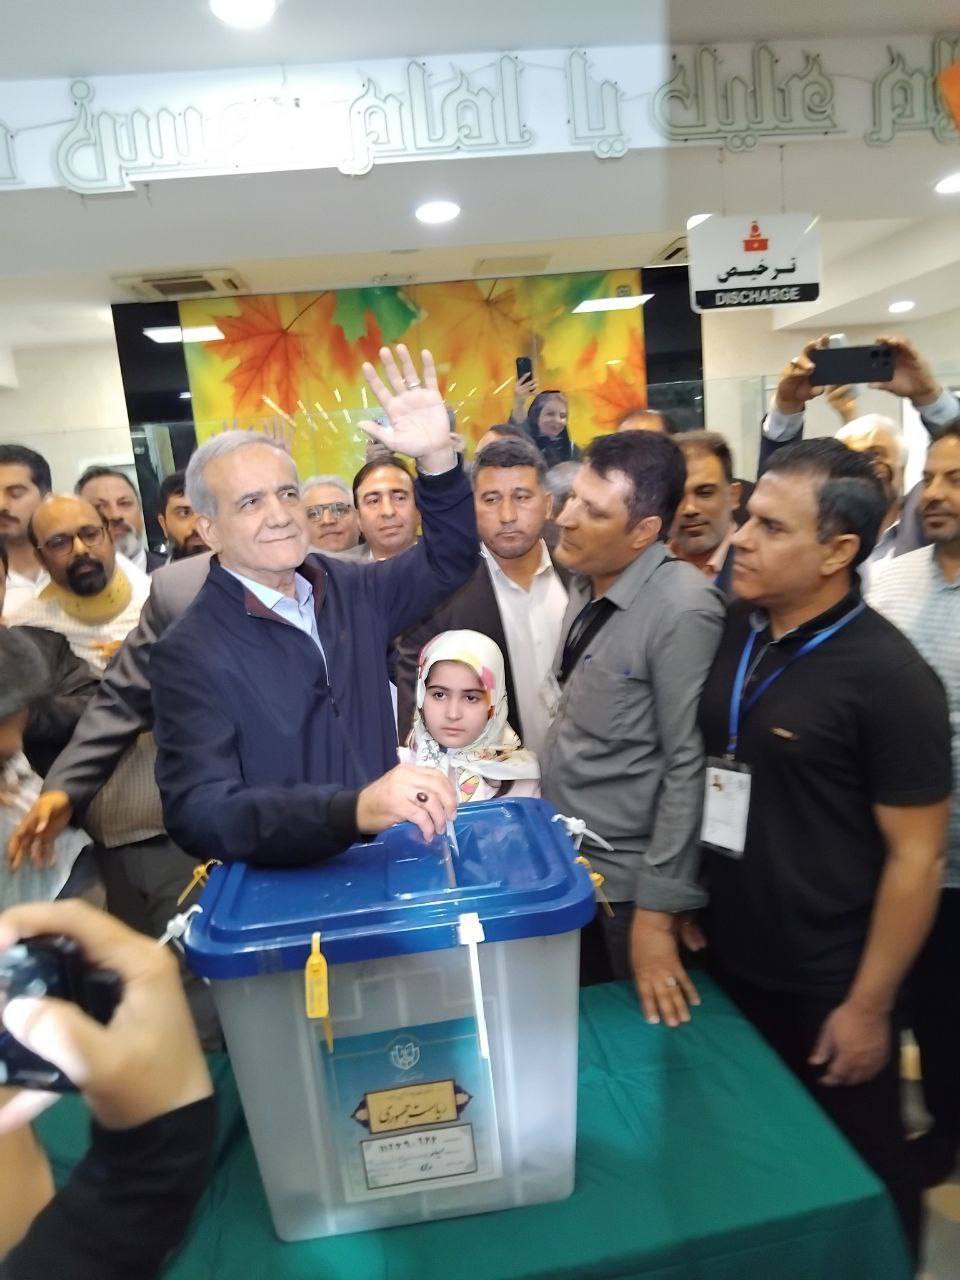 رهبر انقلاب رای دادند/ حضور پزشکیان در بیمارستان فیروزآبادی/ حسن روحانی در یک مدرسه/ نامزد پوششی رای داد +عکس